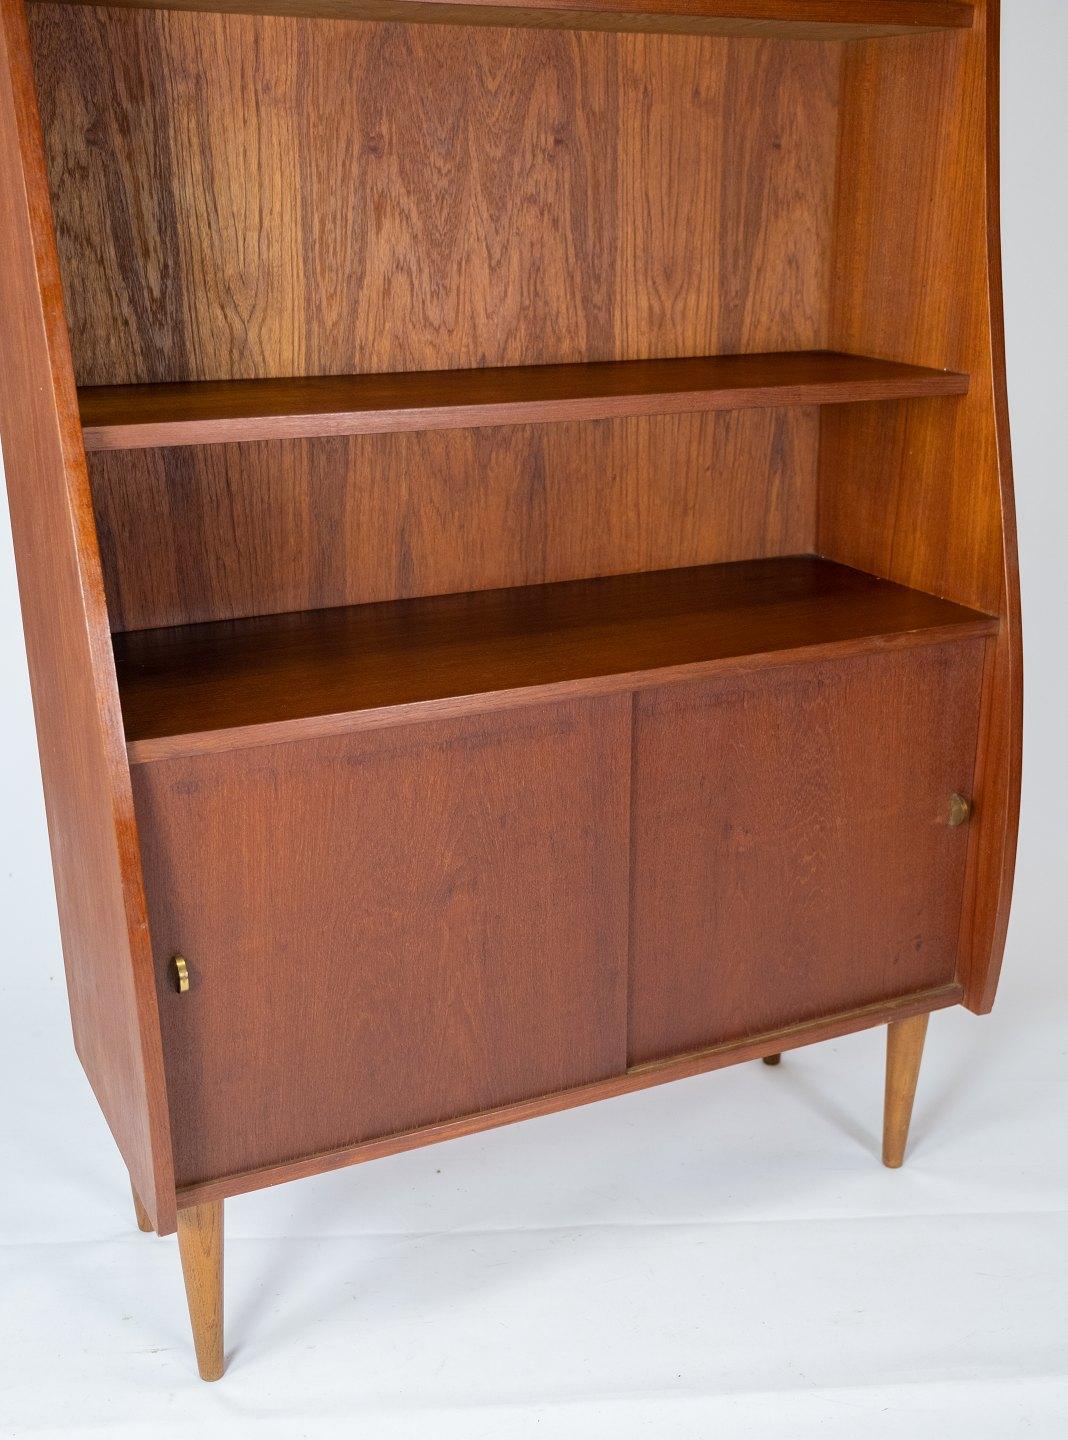 Holen Sie sich ein Stück dänische Designgeschichte mit diesem schönen Bücherregal aus Teakholz aus den 1960er Jahren.

Dieses Bücherregal repräsentiert die zeitlose Eleganz und Funktionalität, die das dänische Möbeldesign dieser Epoche auszeichnet.